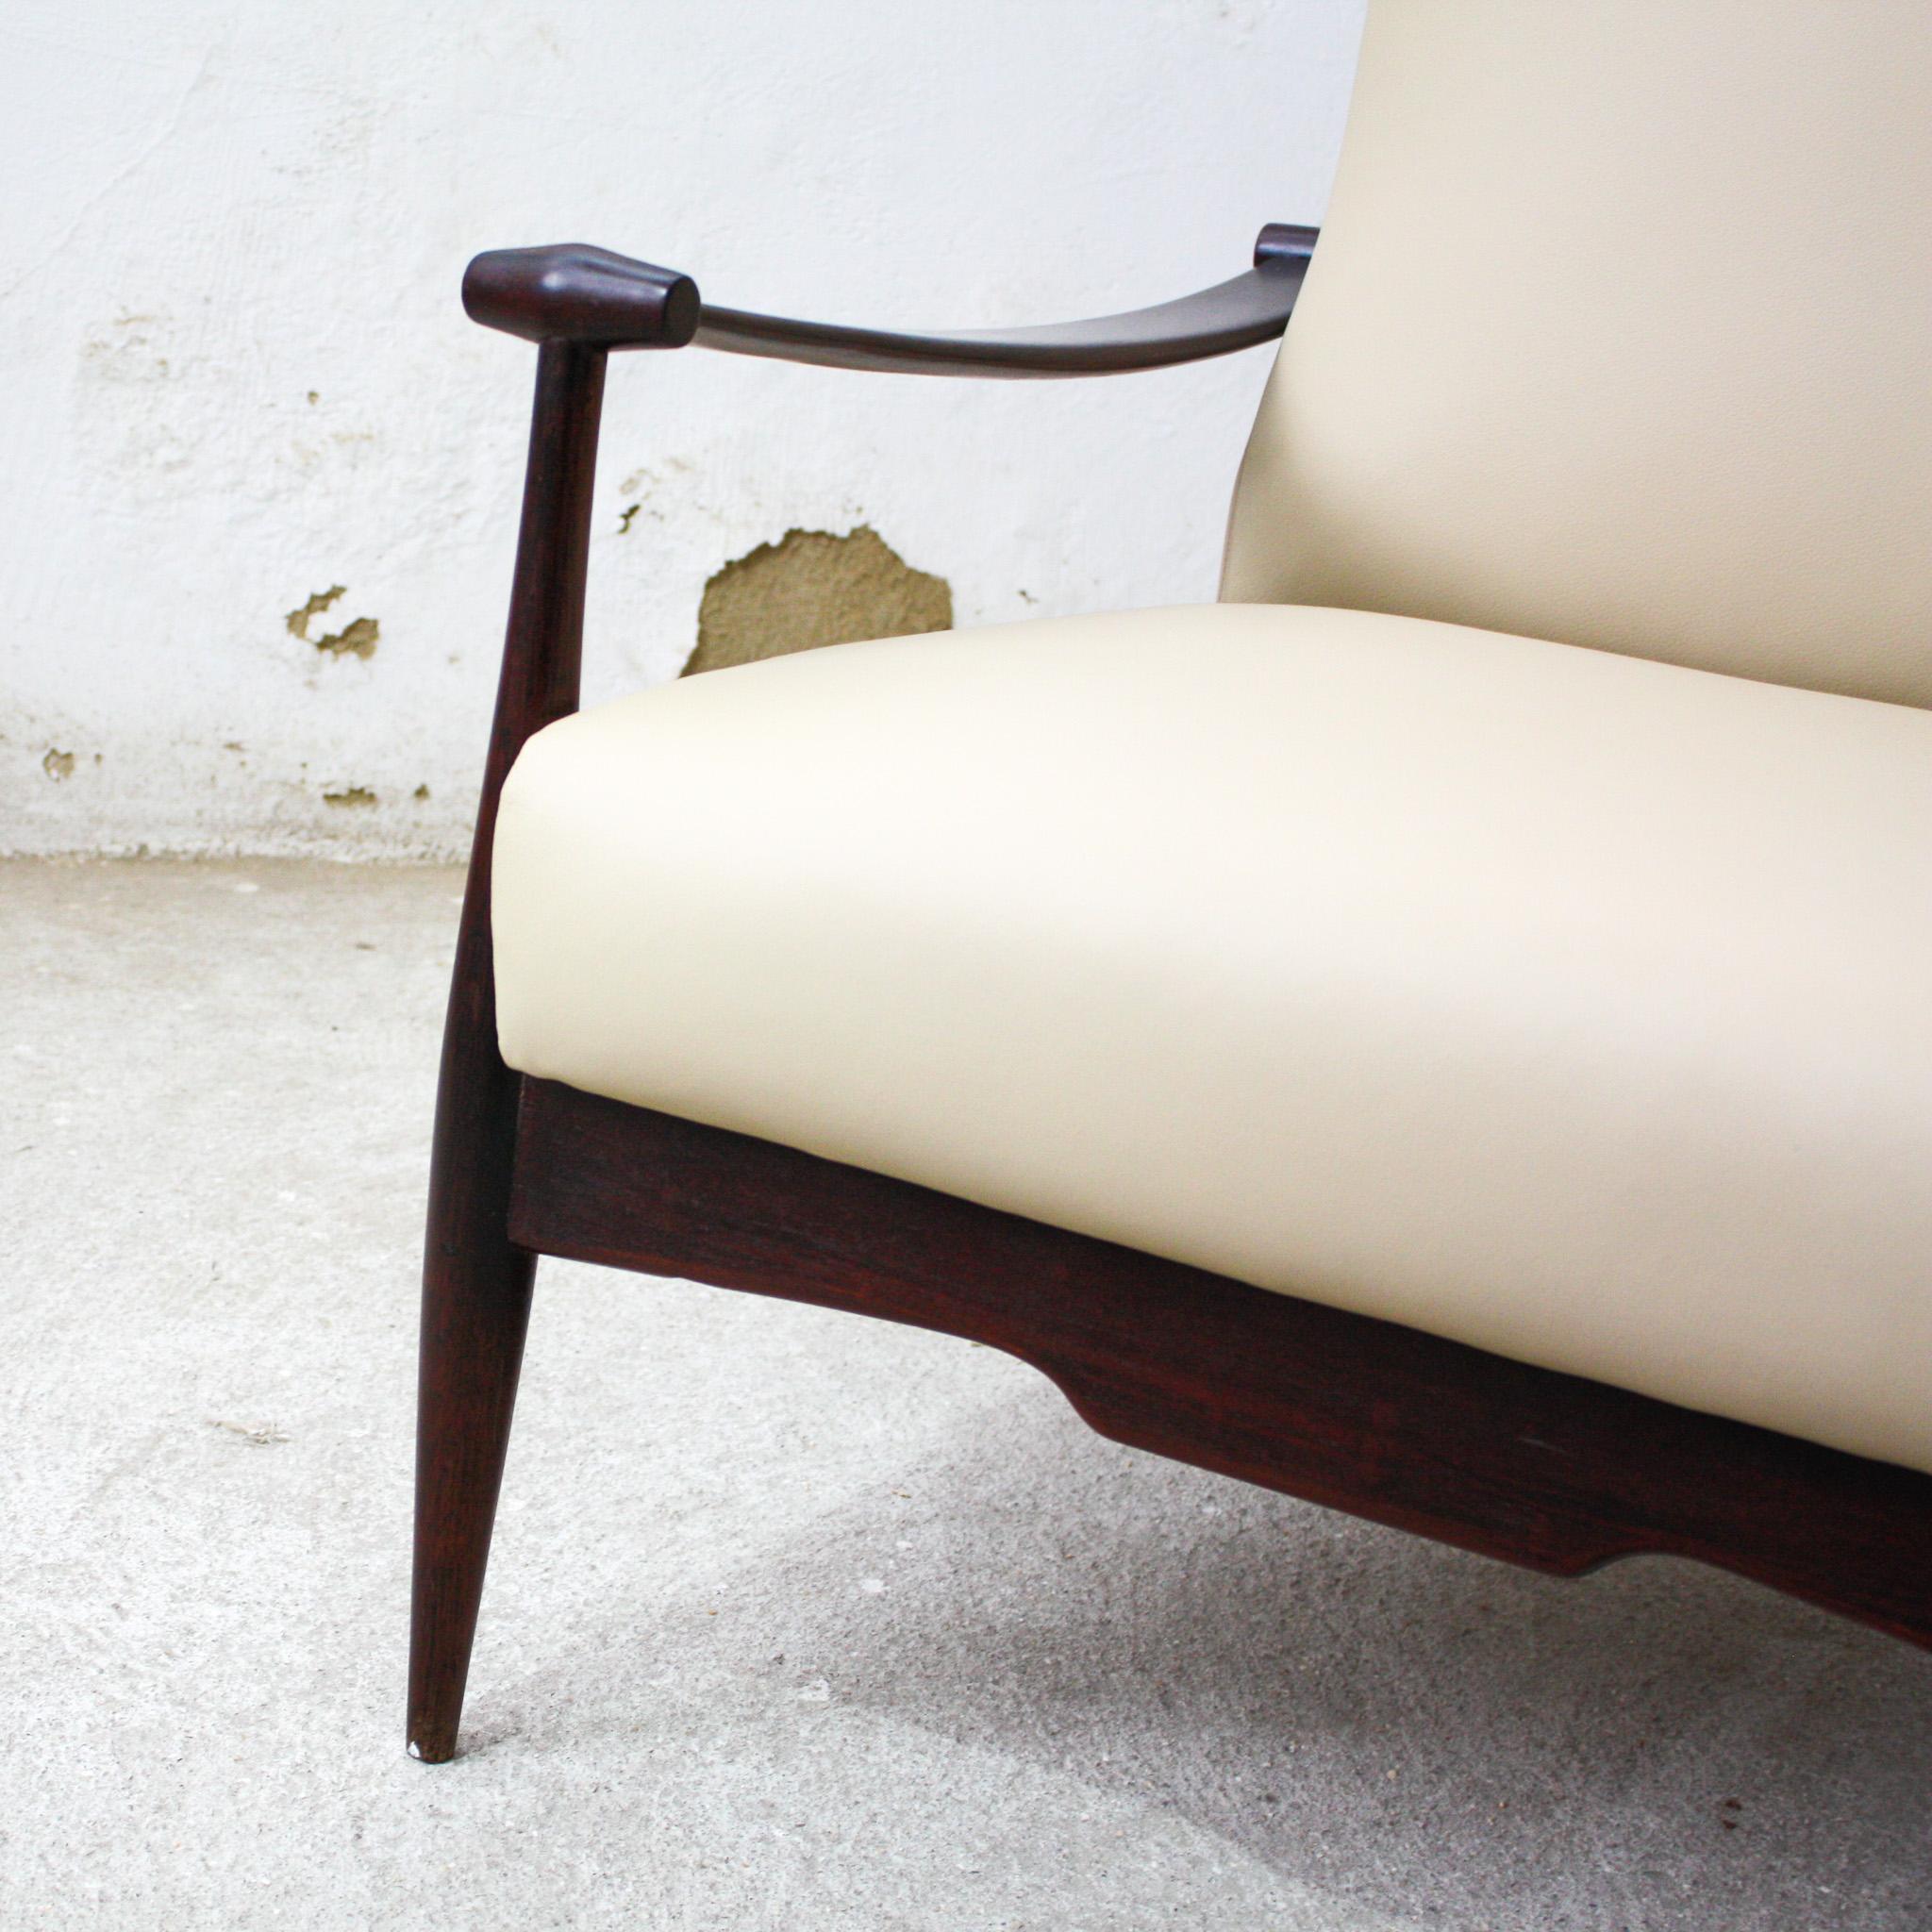 Brazilian Modern Armchair Set in Hardwood & Beige Leather by Liceu de Artes 1960 For Sale 2